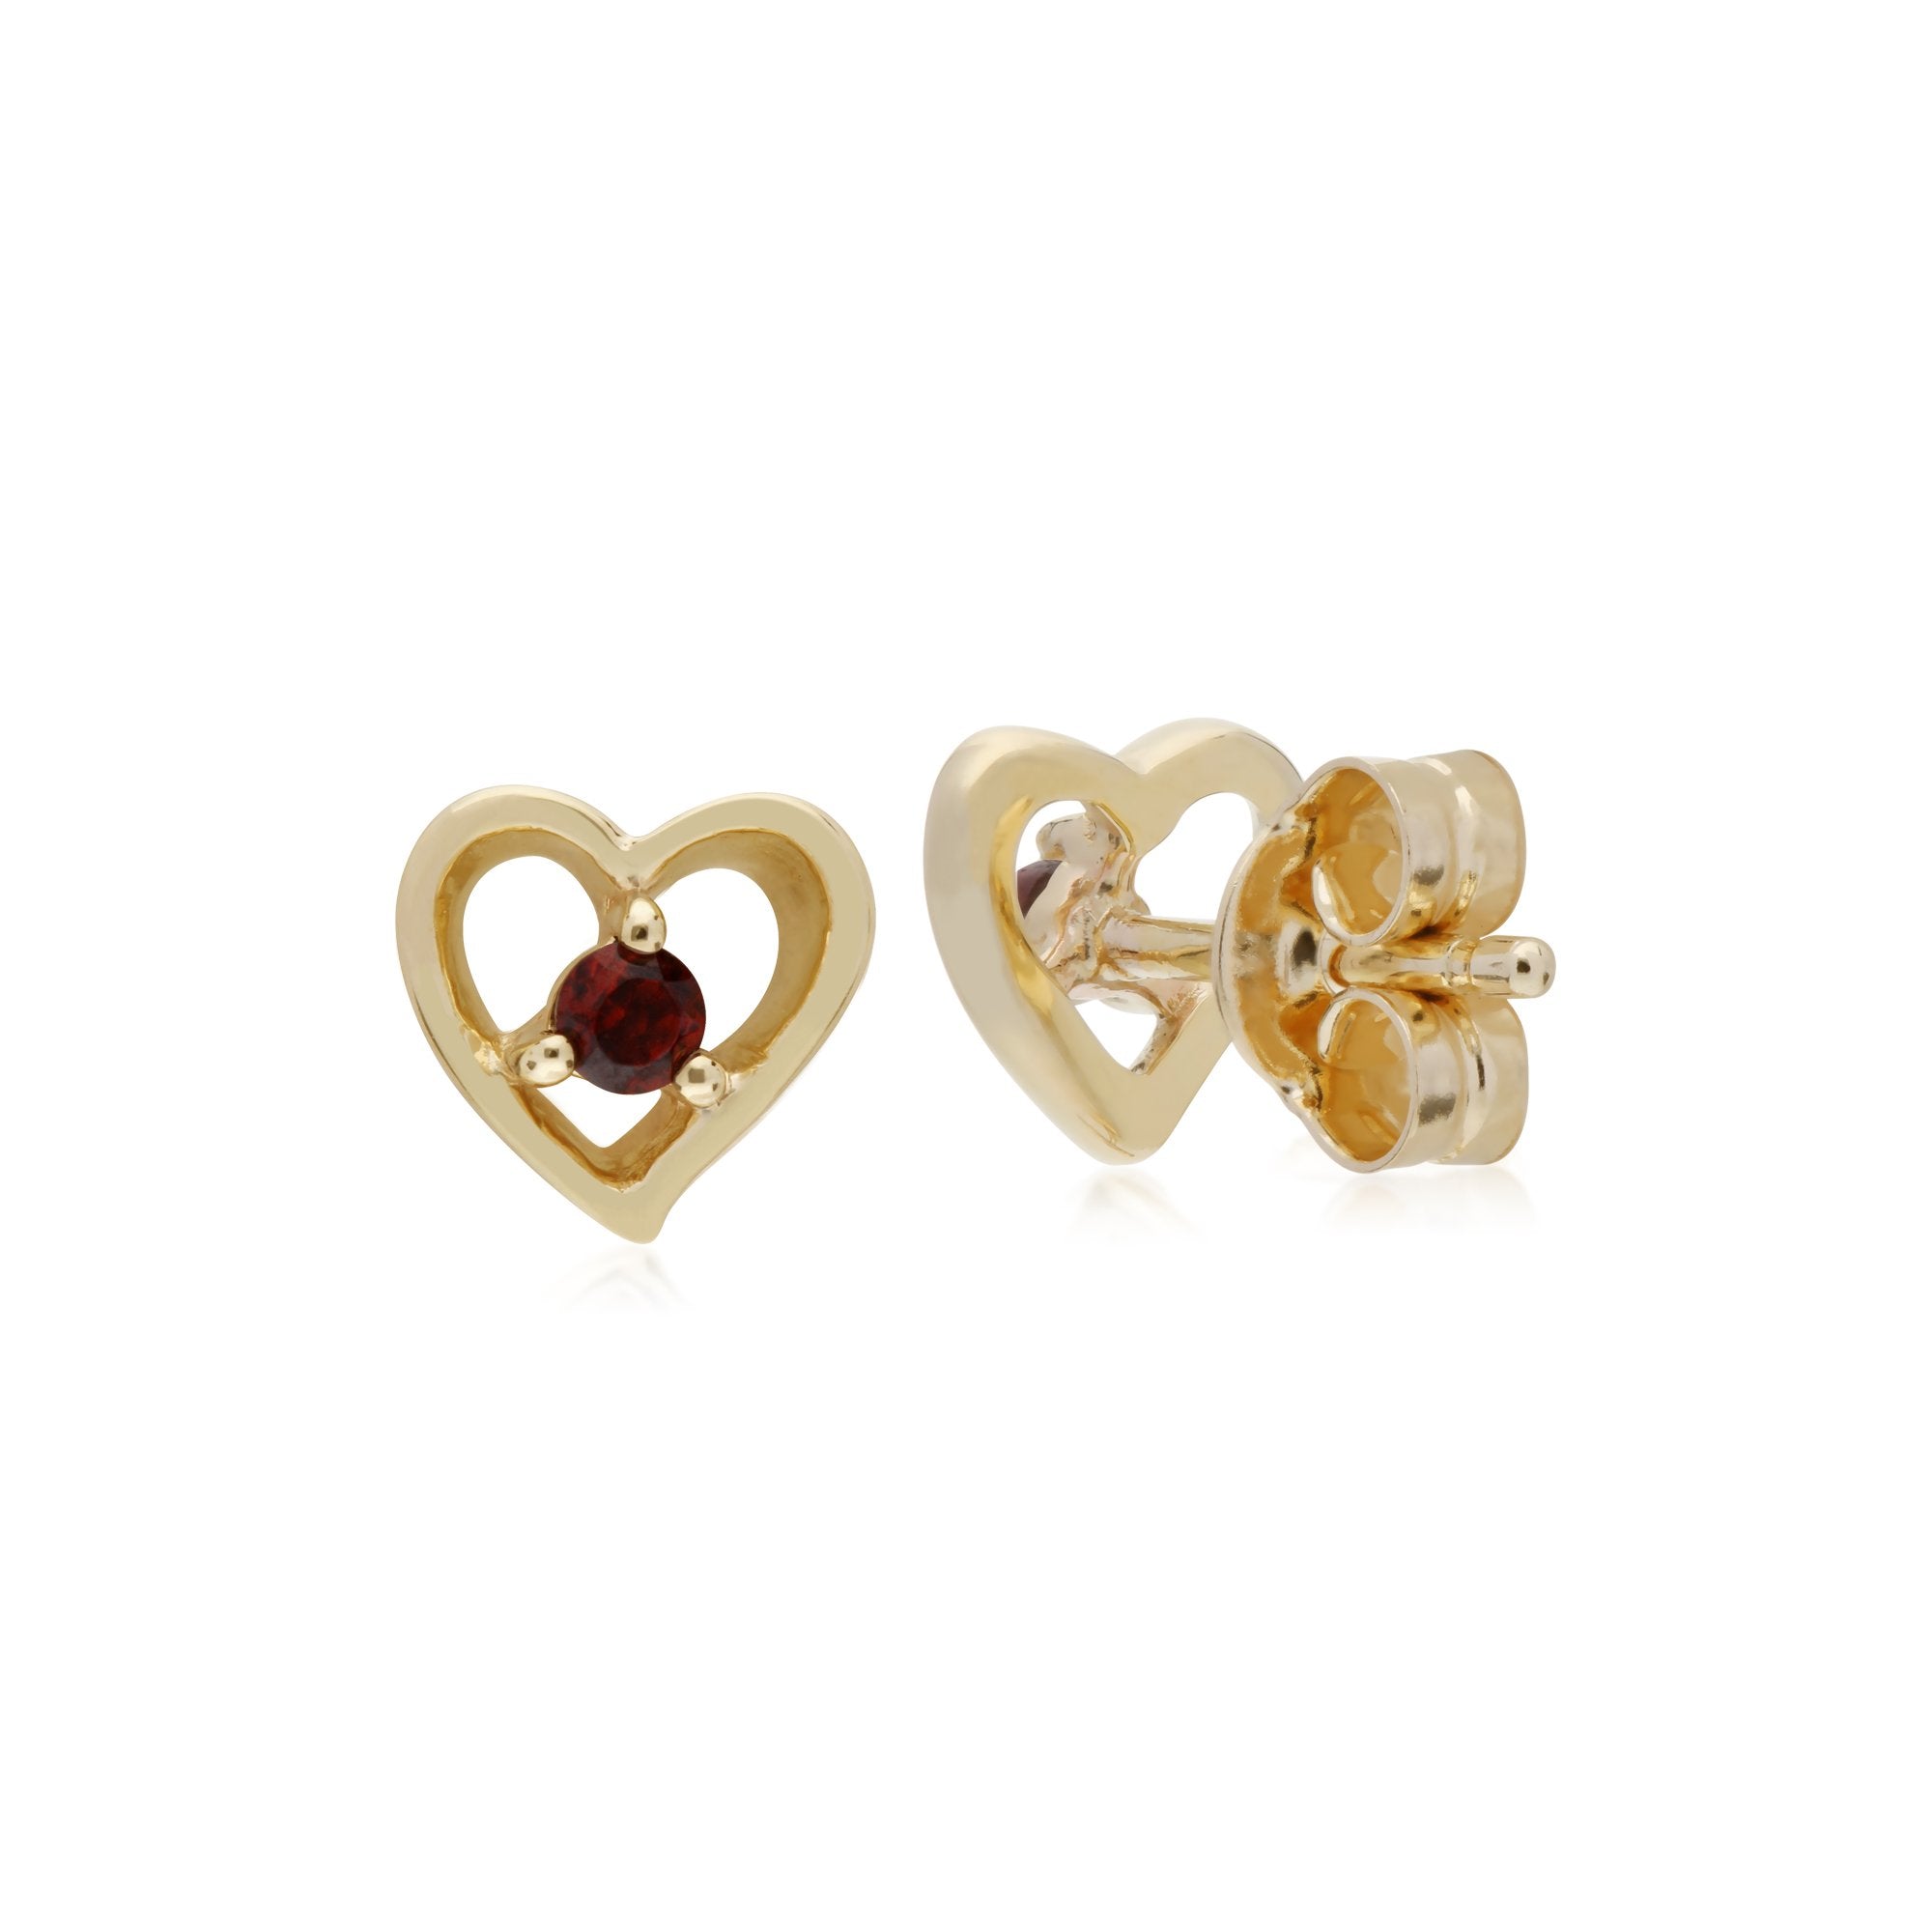 Gemondo 9ct Yellow Gold Garnet Single Stone Heart Stud Earrings